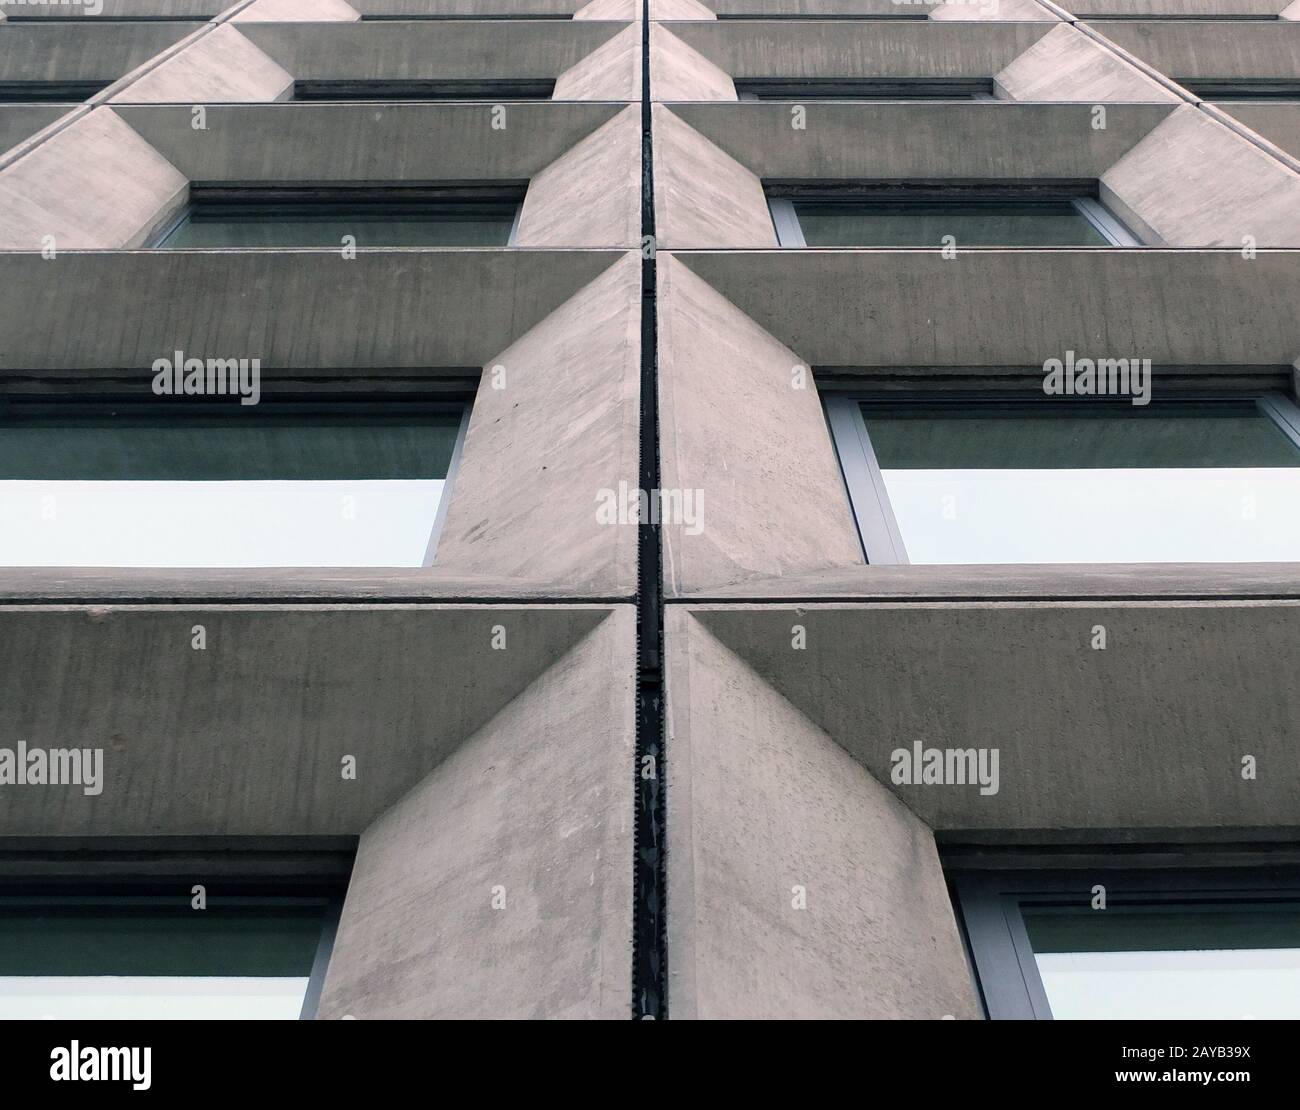 vue perspective de fenêtres géométriques en béton angulaire sur la façade d'un bâtiment de style brutaliste moderniste des années 1960 Banque D'Images